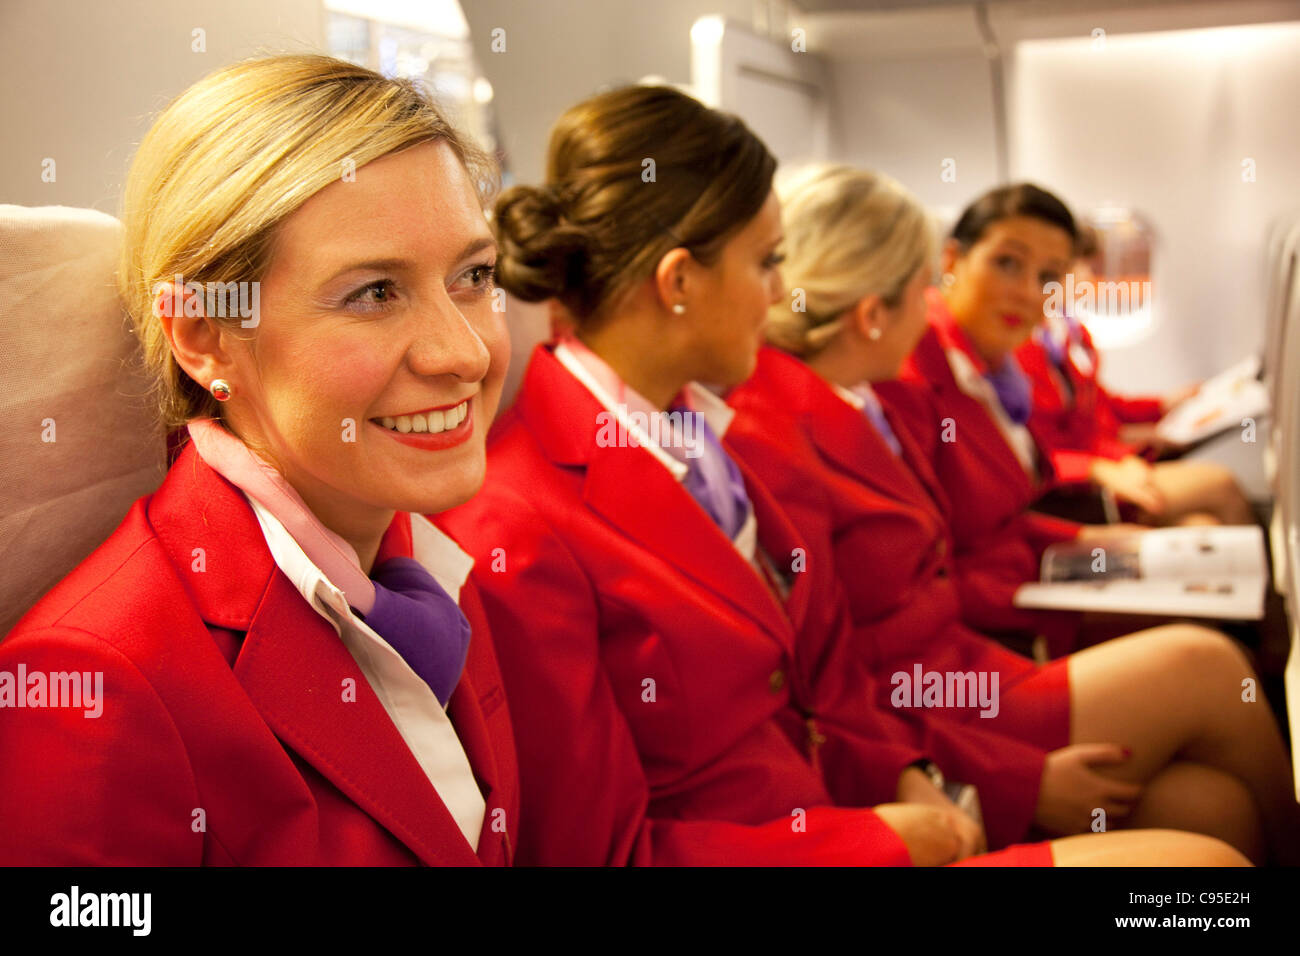 virgin airlines flight attendant salary